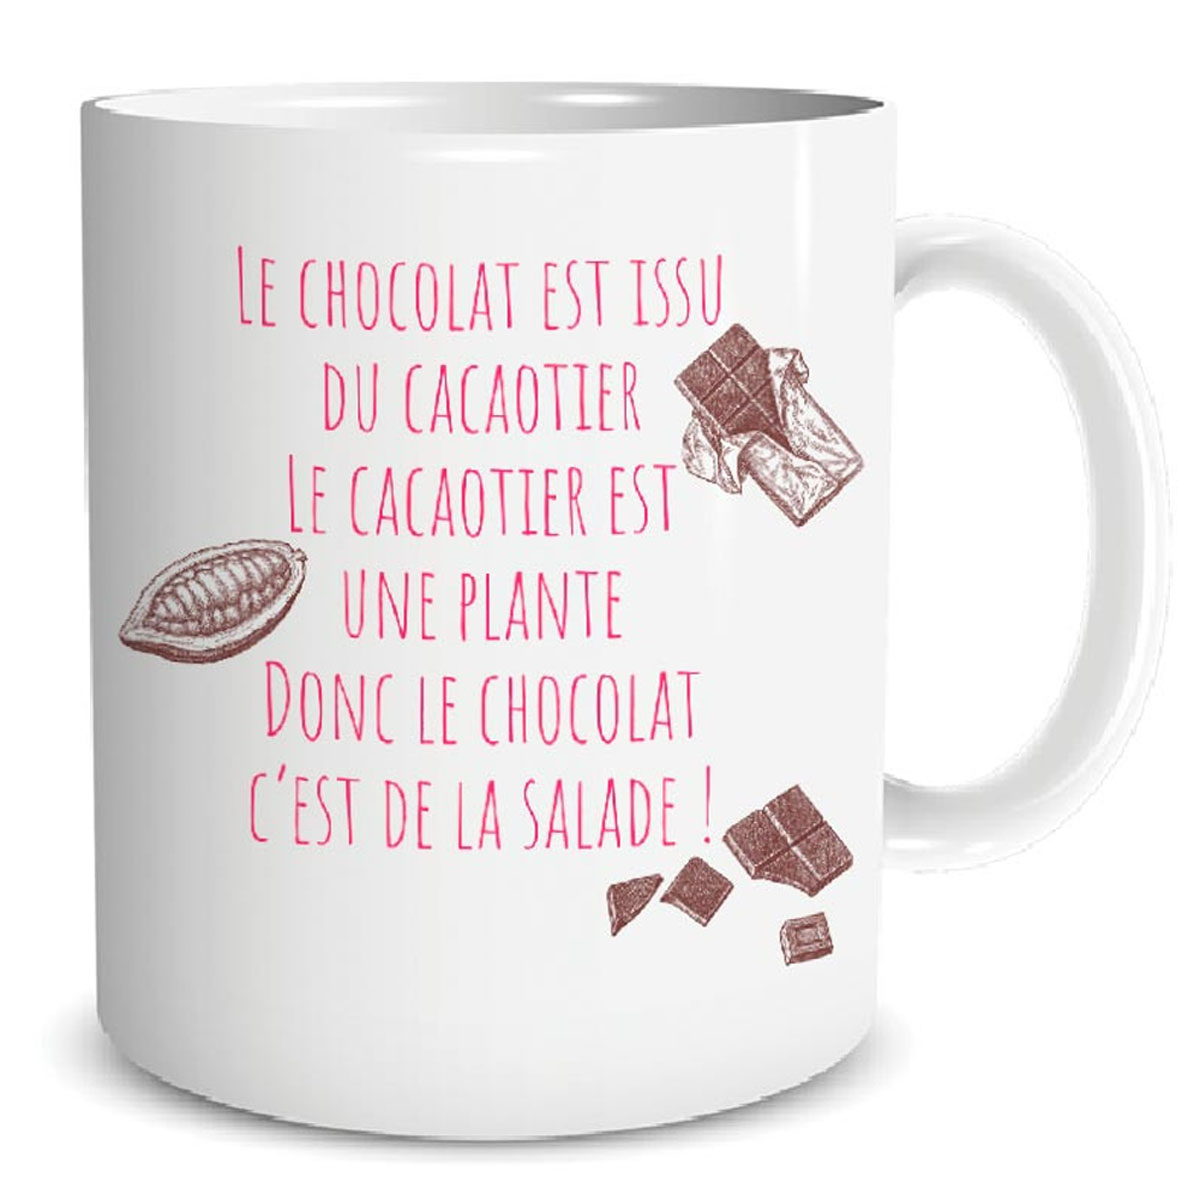 Mug céramique \'Messages\' (Le chocolat est issu du cacaotier, le cacaotier est une plante donc le chocolat c\'est de la salade !) - 95x80 mm - [R5072]